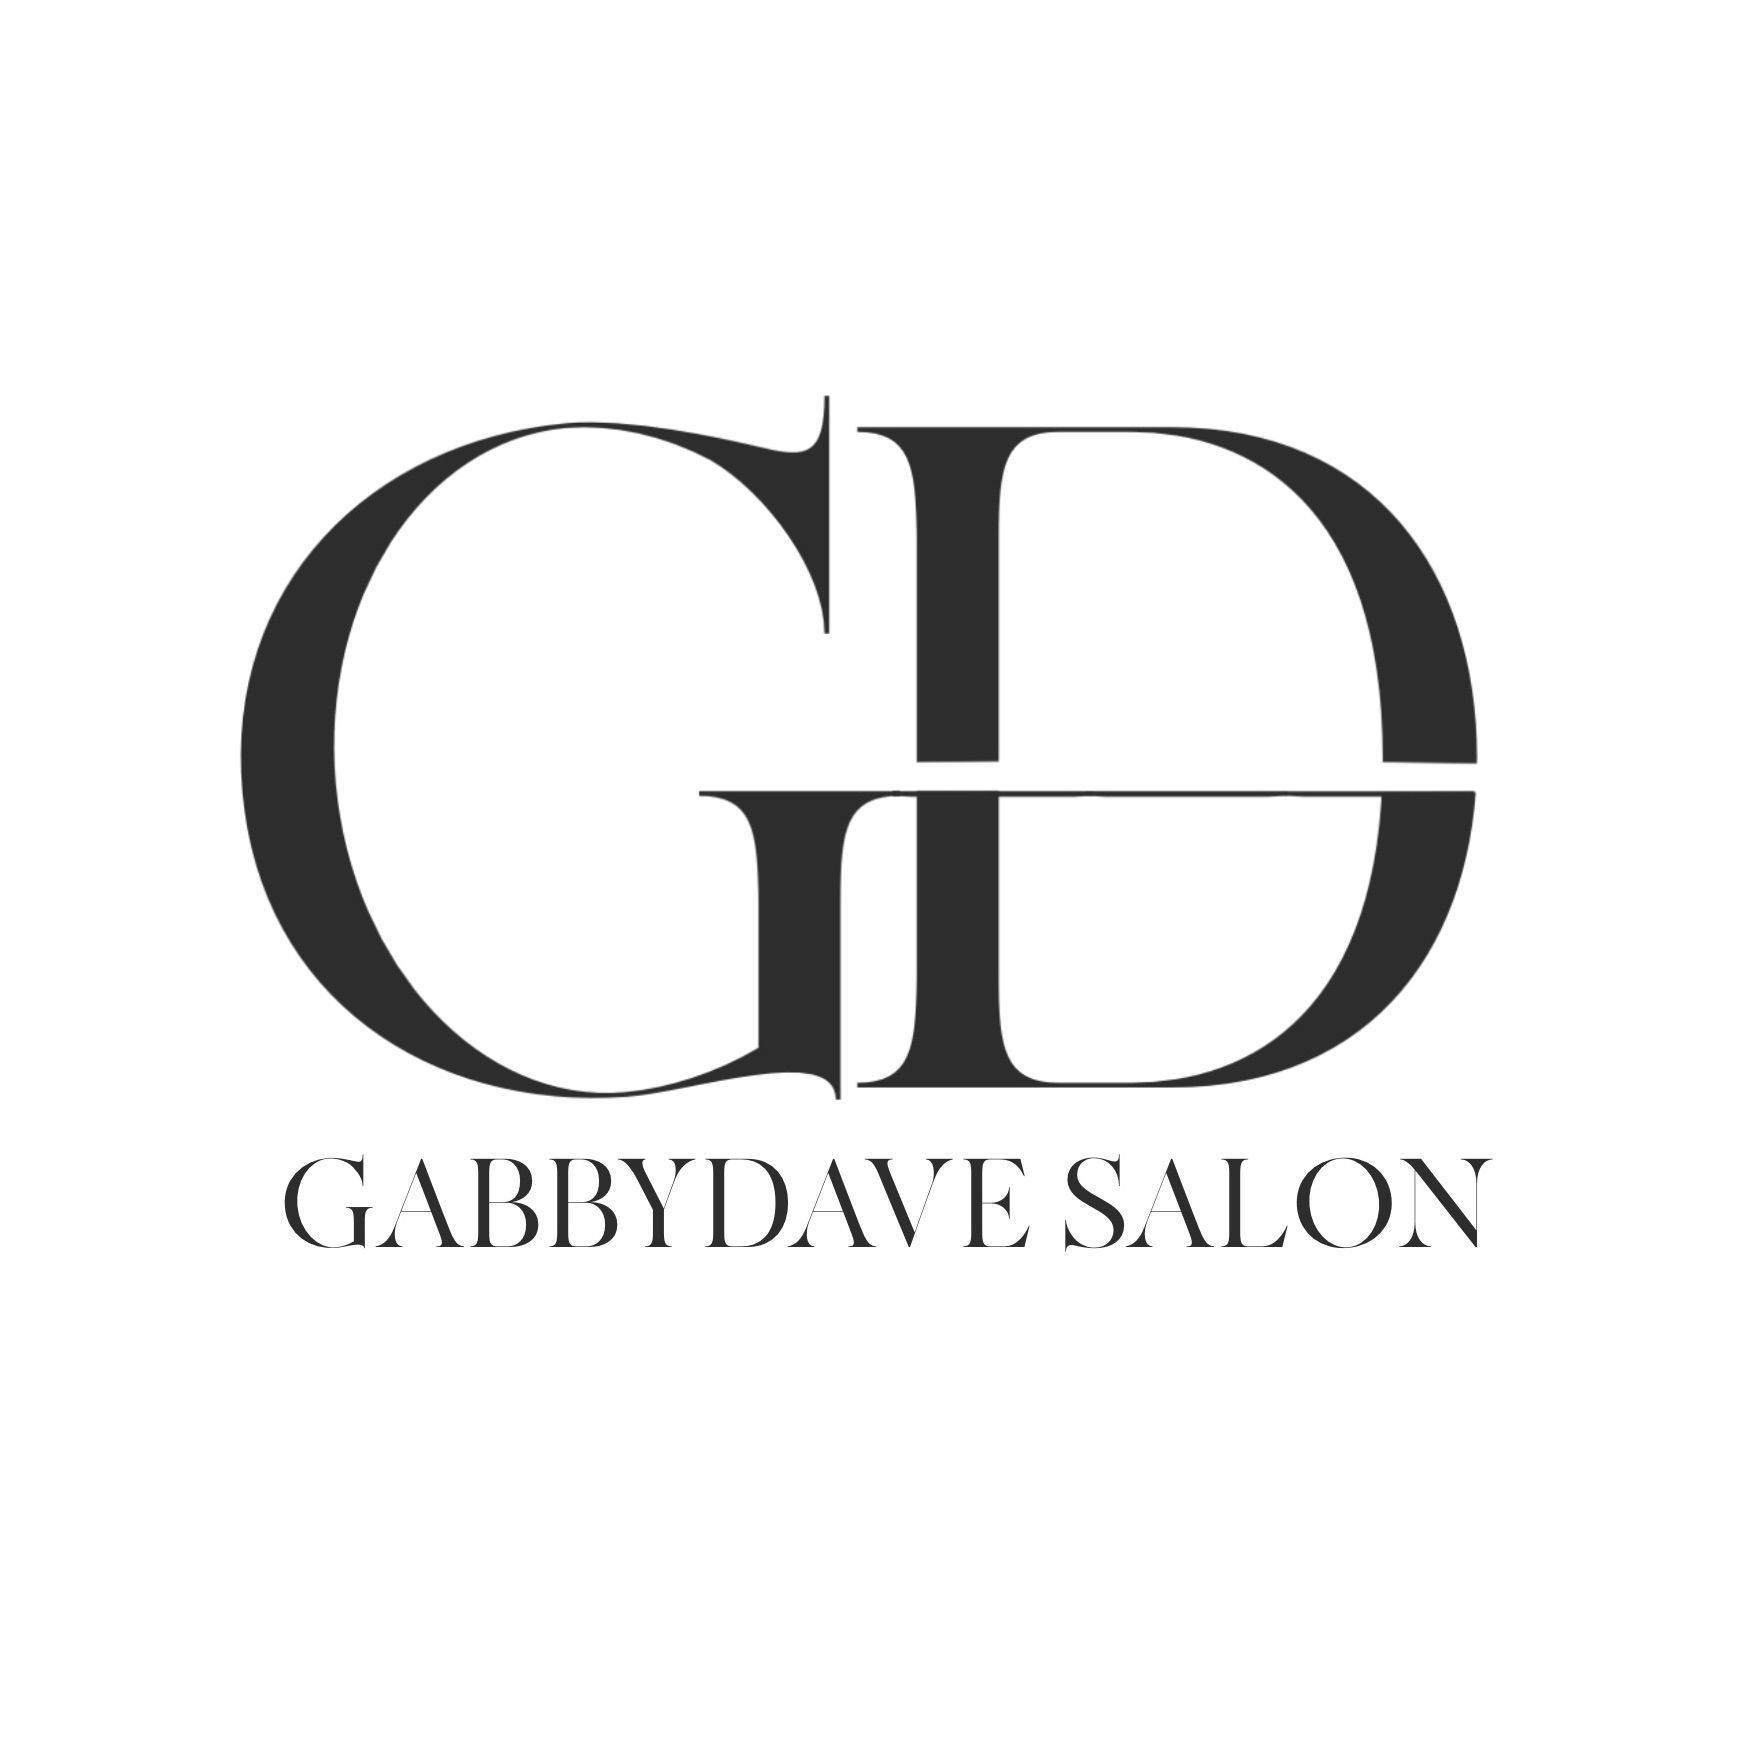 GabbyDave Salon, 33 Bolton Road, BL8 2AB, Bury